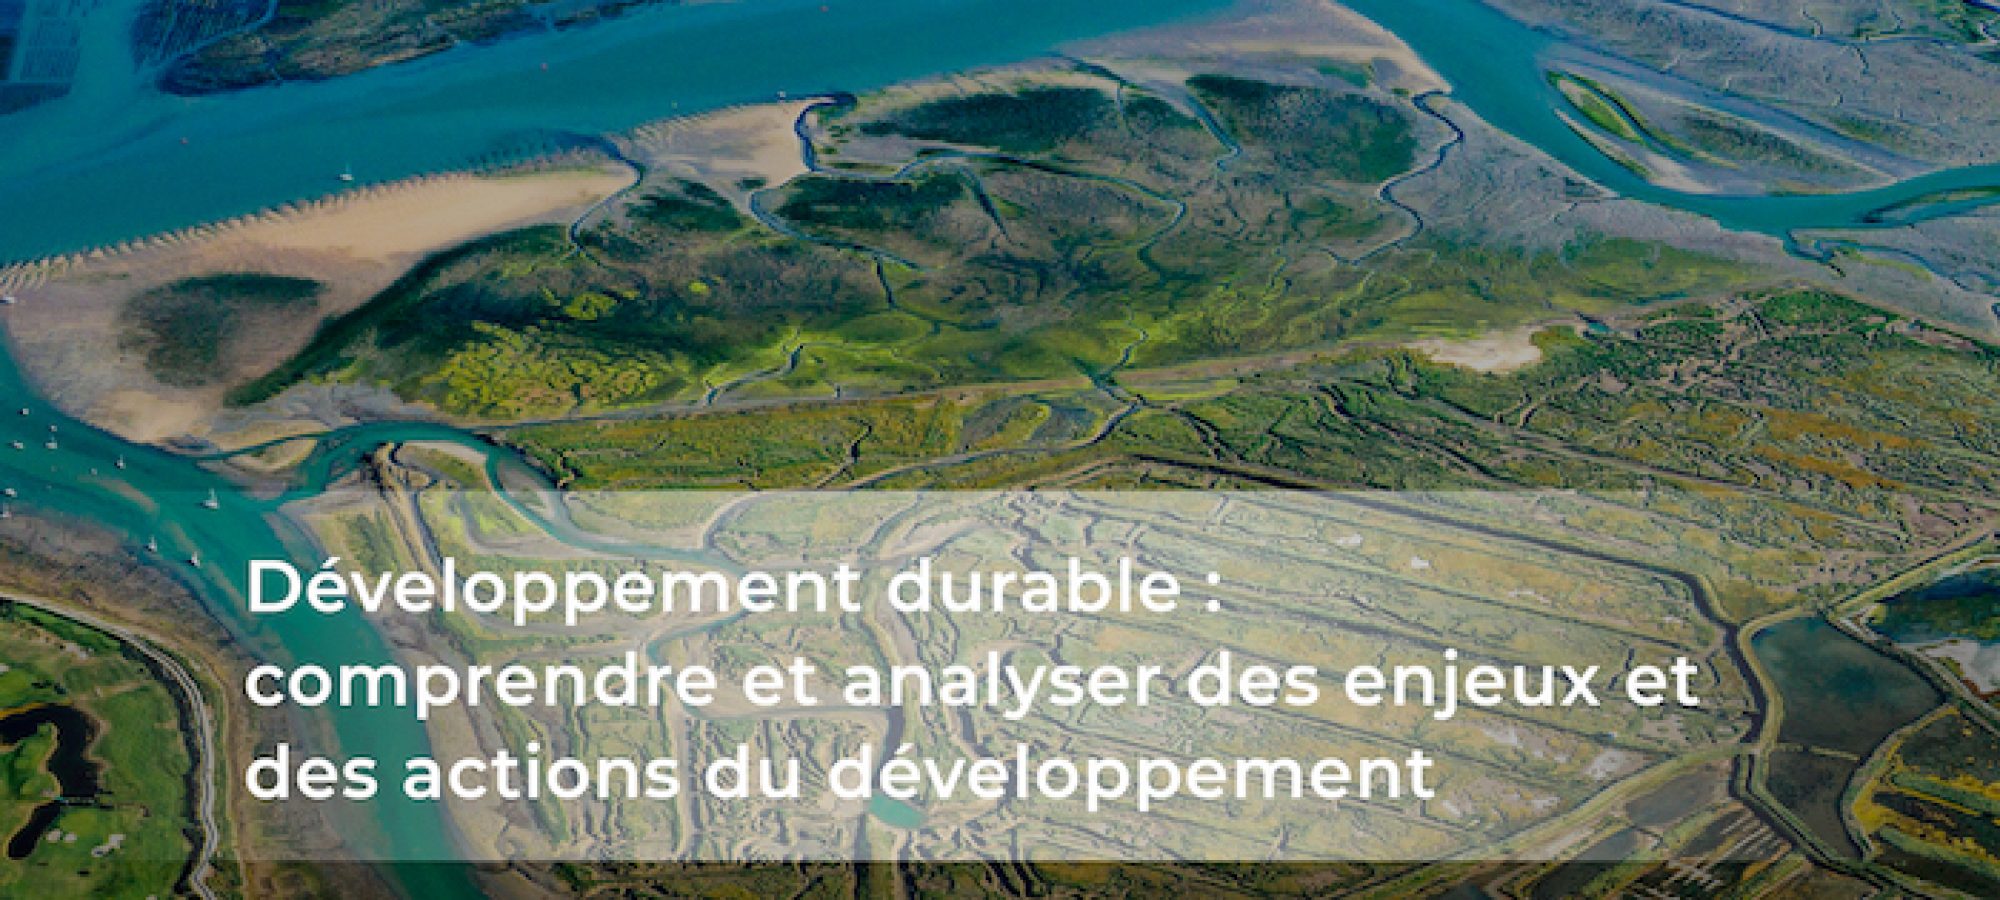 Comprendre et analyser les enjeux et les actions du développement durable, les formations en ligne de l’IFDD